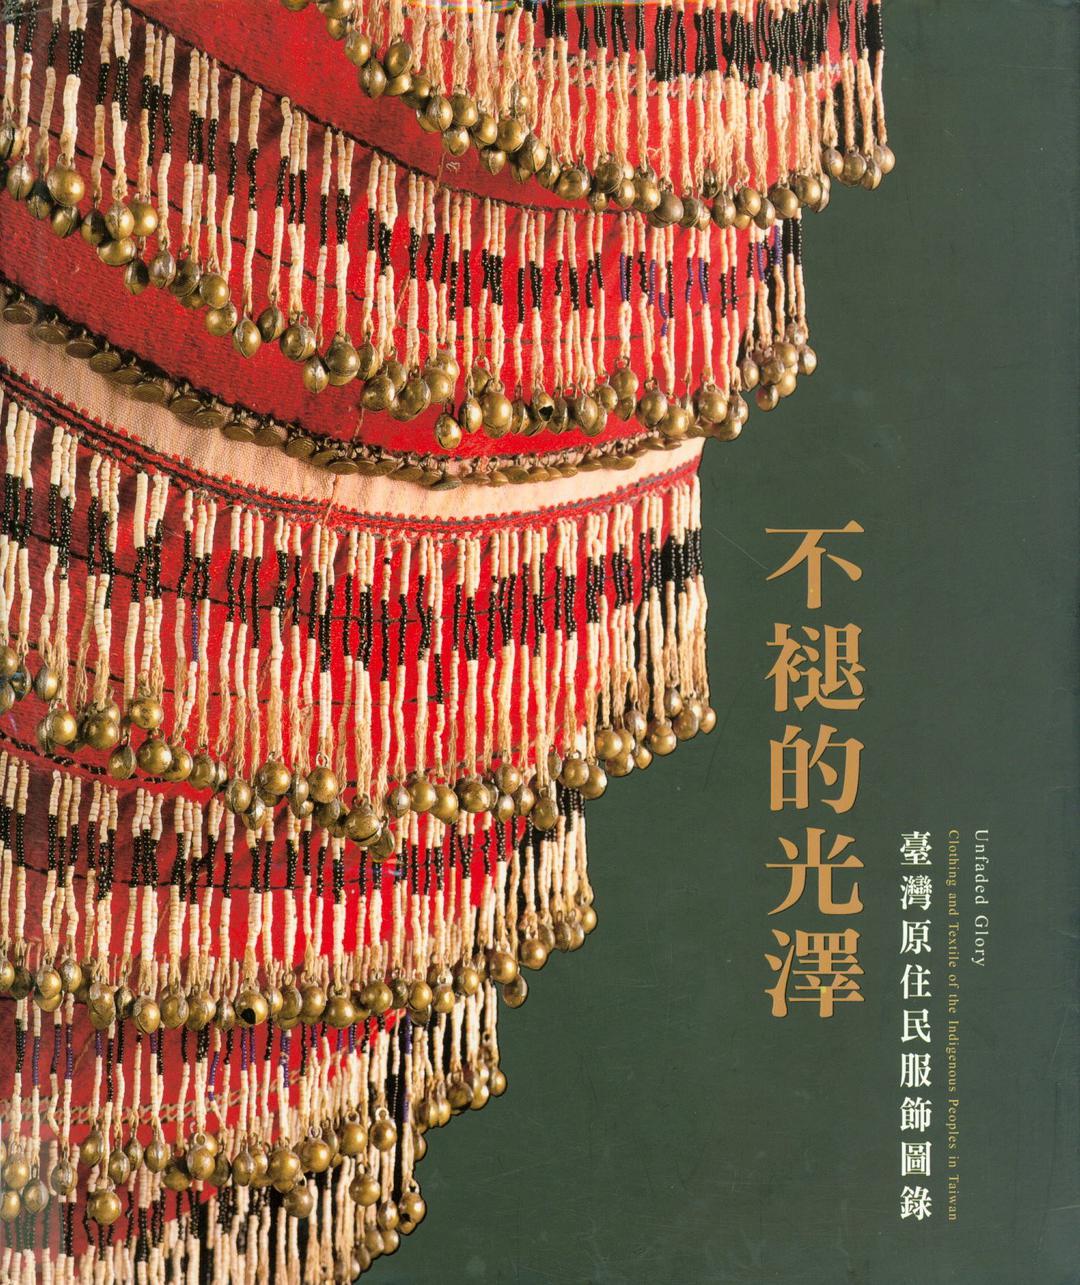 不褪的光泽 台湾原住民服饰图录 clothing and textile of the indigenous peoples in Taiwan